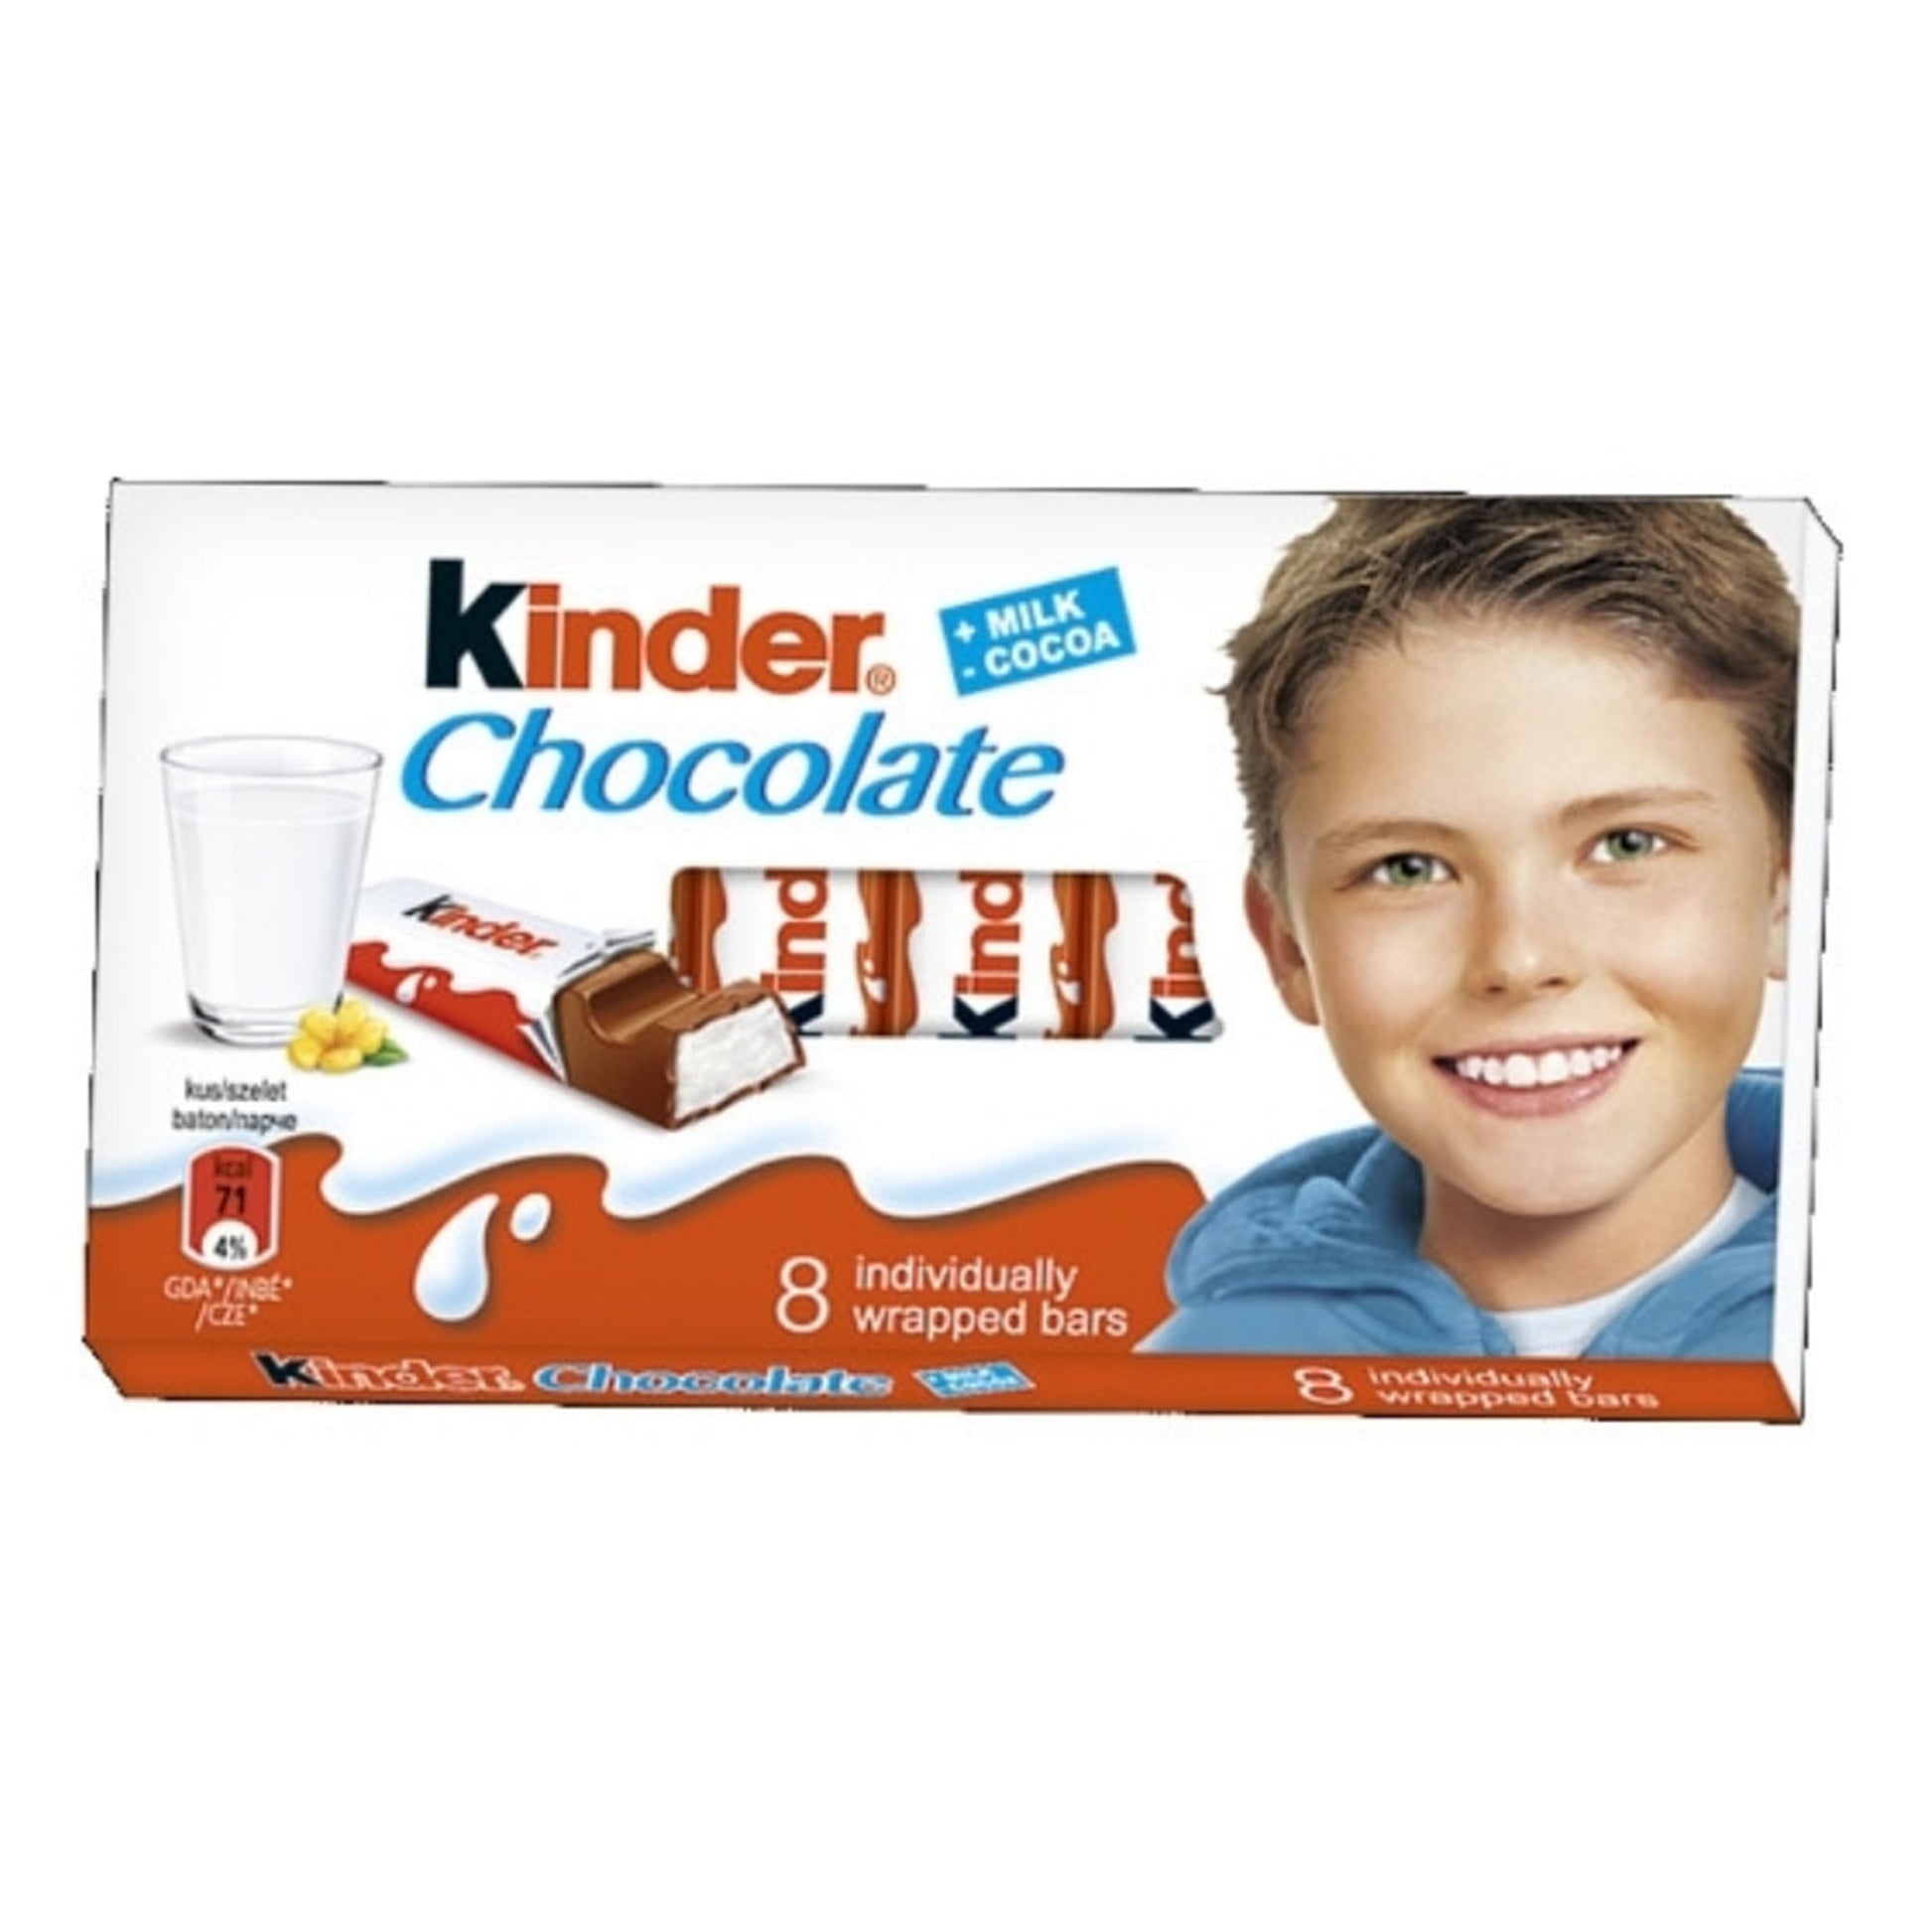 Kinder Chocolate Milk/Cocoa 8B